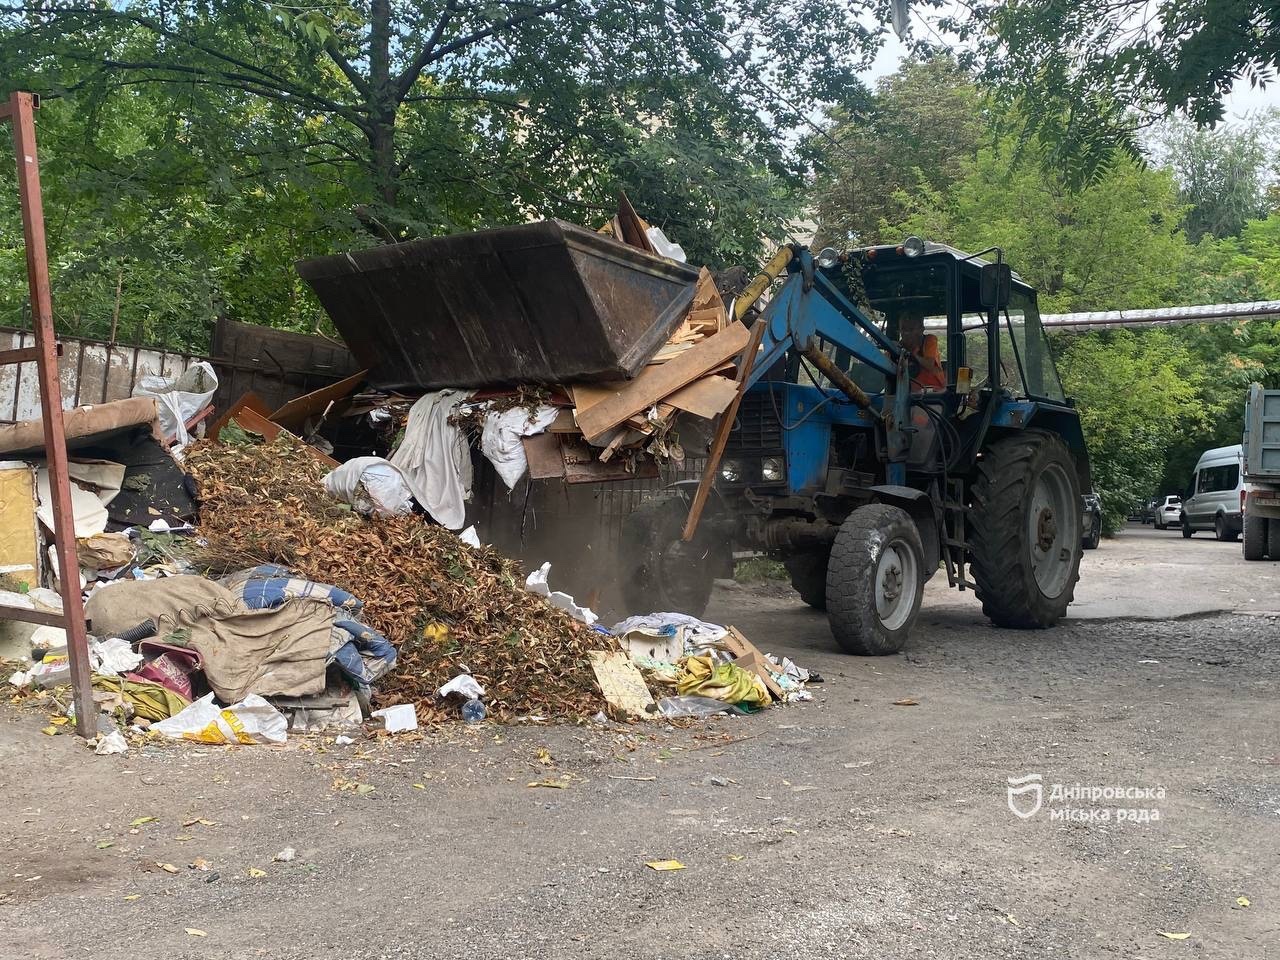 22 стихійні сміттєзвалища ліквідували у Дніпрі від квітня — роботи тривають